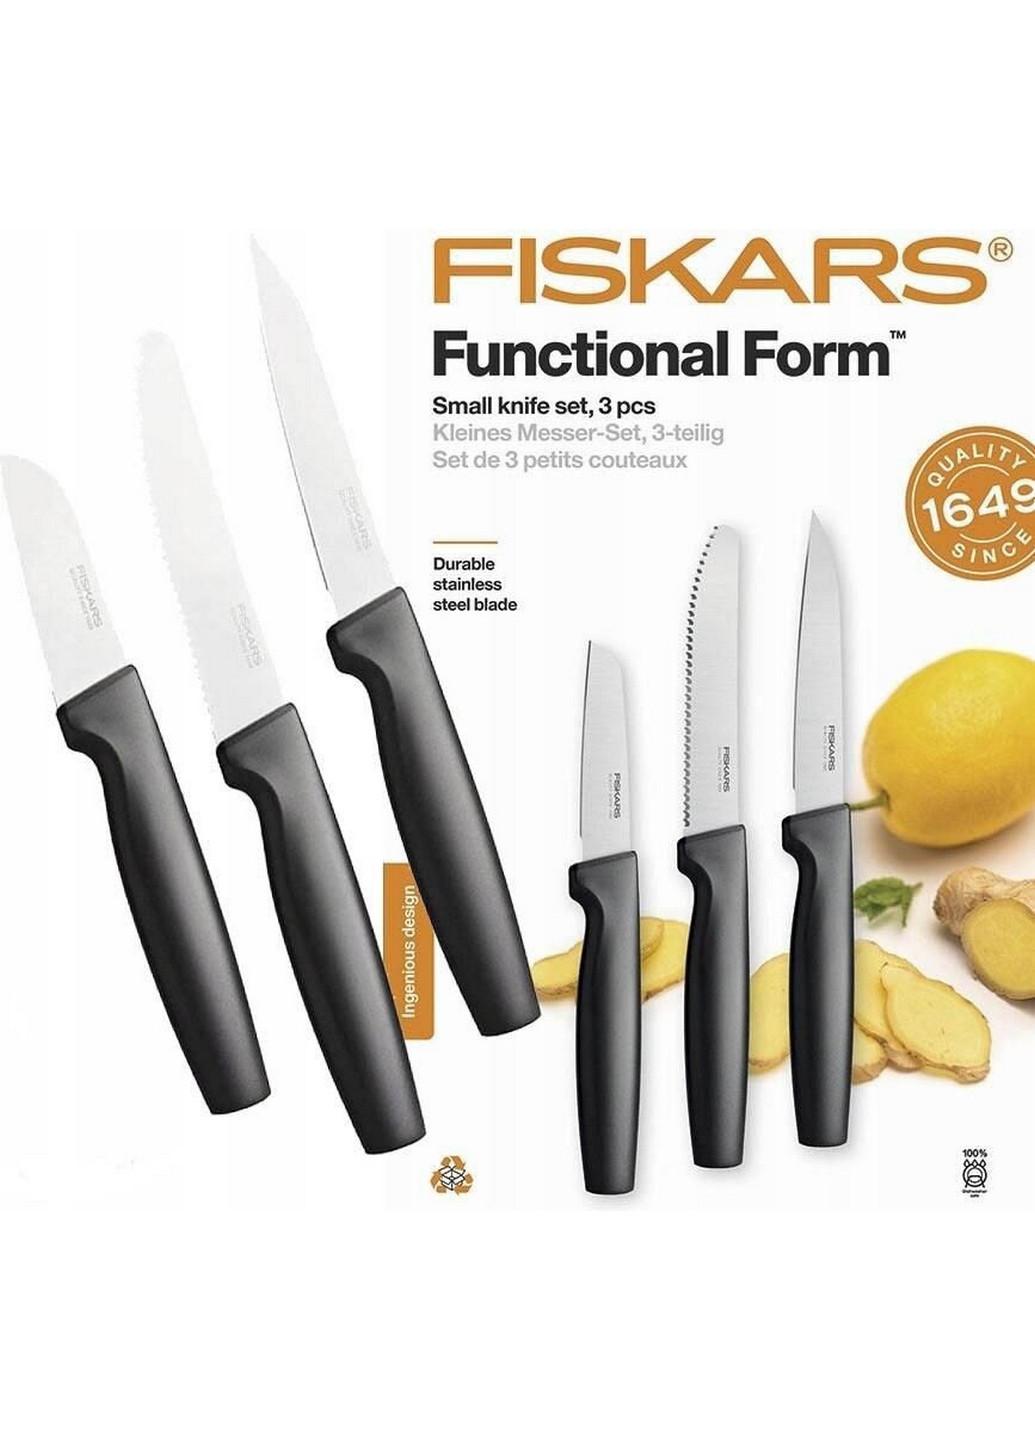 Набор ножей для чистки Functional Form Small Knife Set Fiskars чёрные,